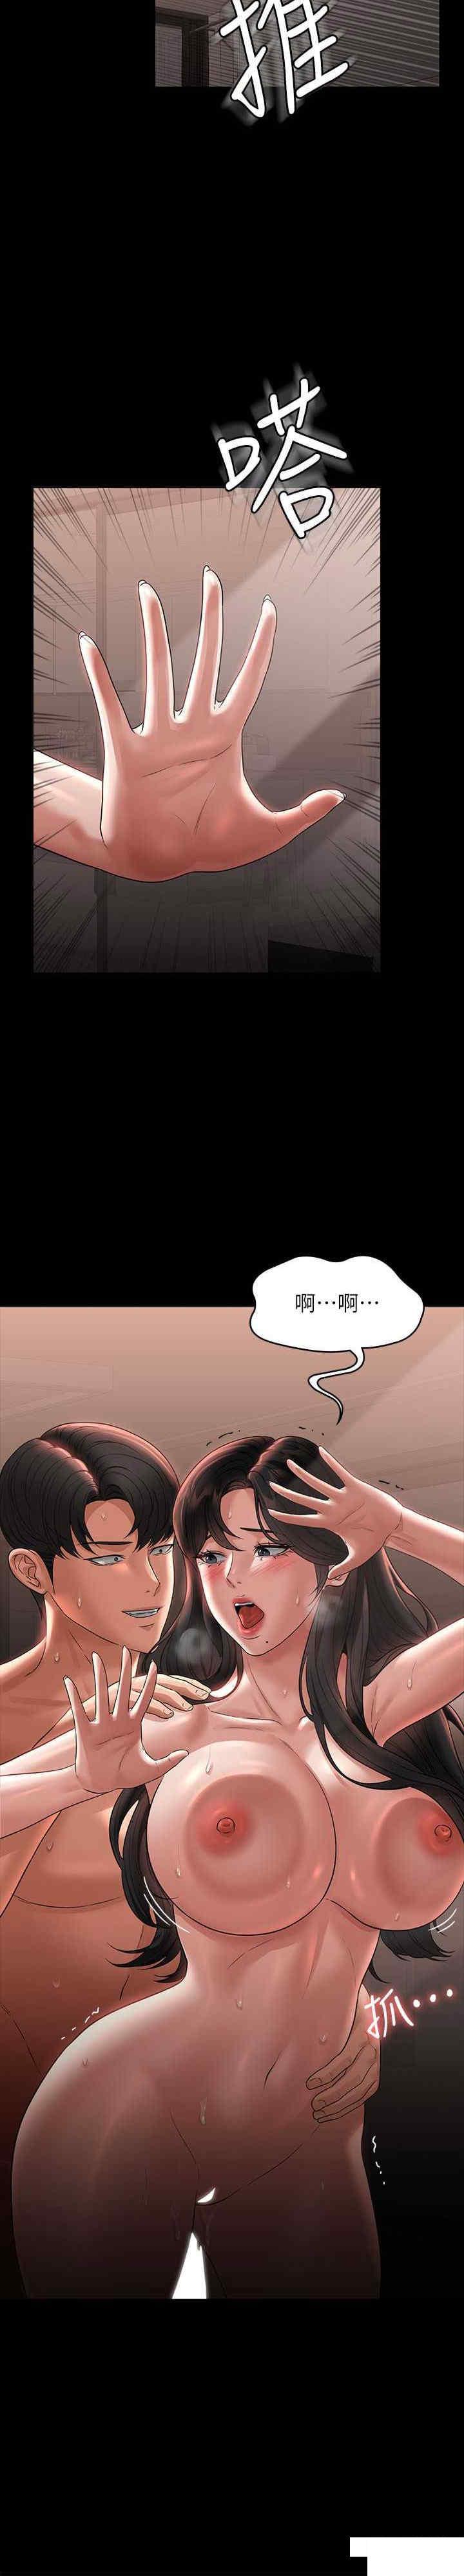 韩国污漫画 超級公務員 第94话 被狠狠抽插过的淫荡痕迹 33